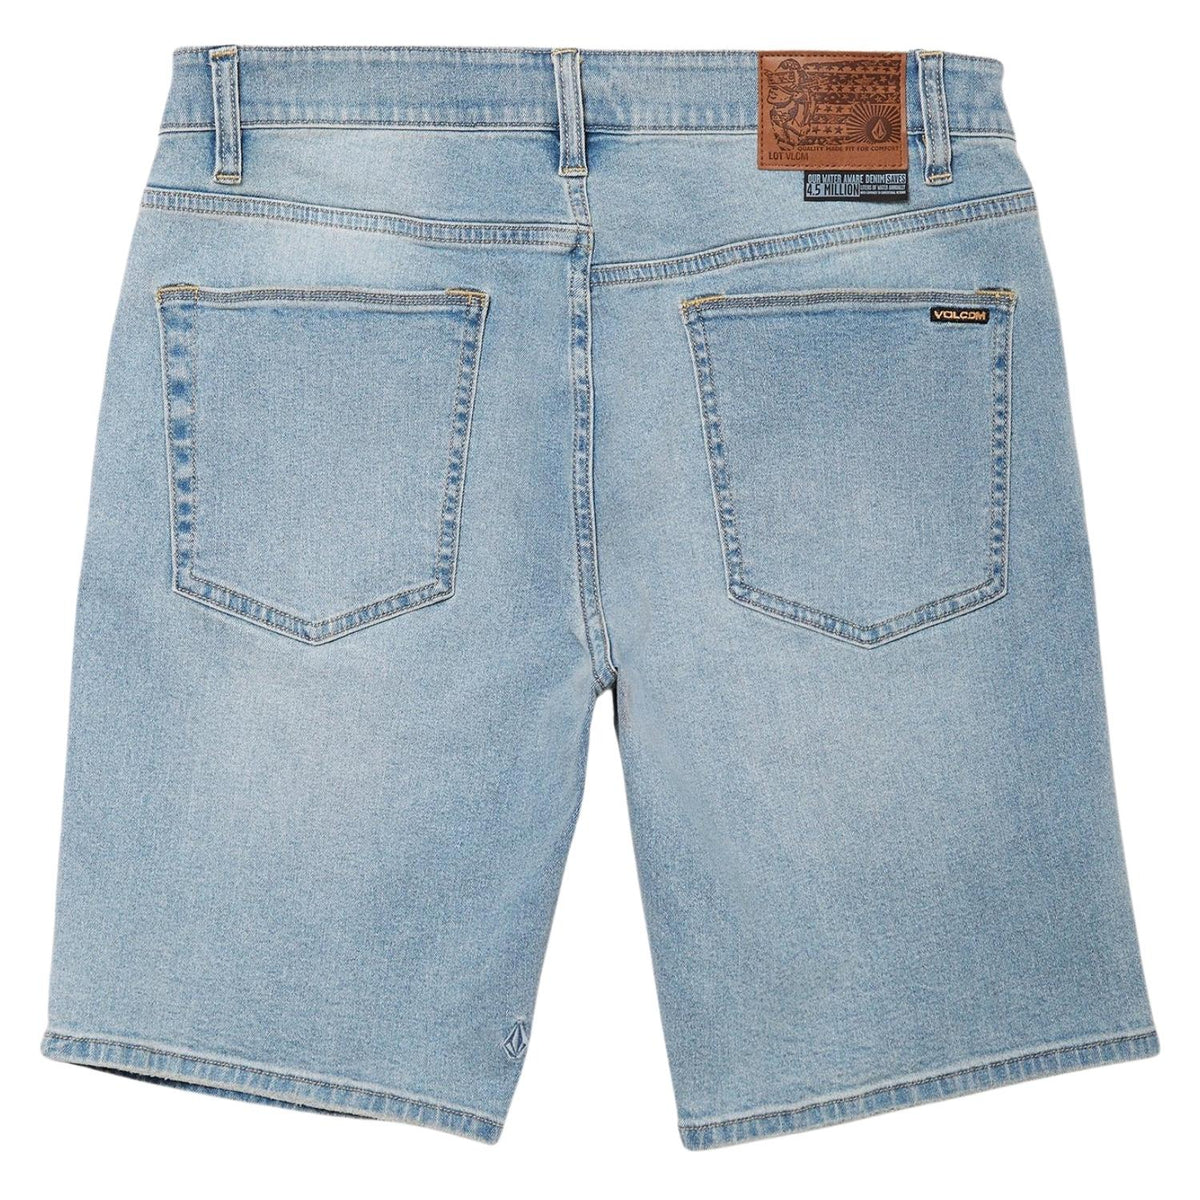 Volcom Solver Denim Shorts - Worker Indigo Vintage - Mens Denim Shorts by Volcom